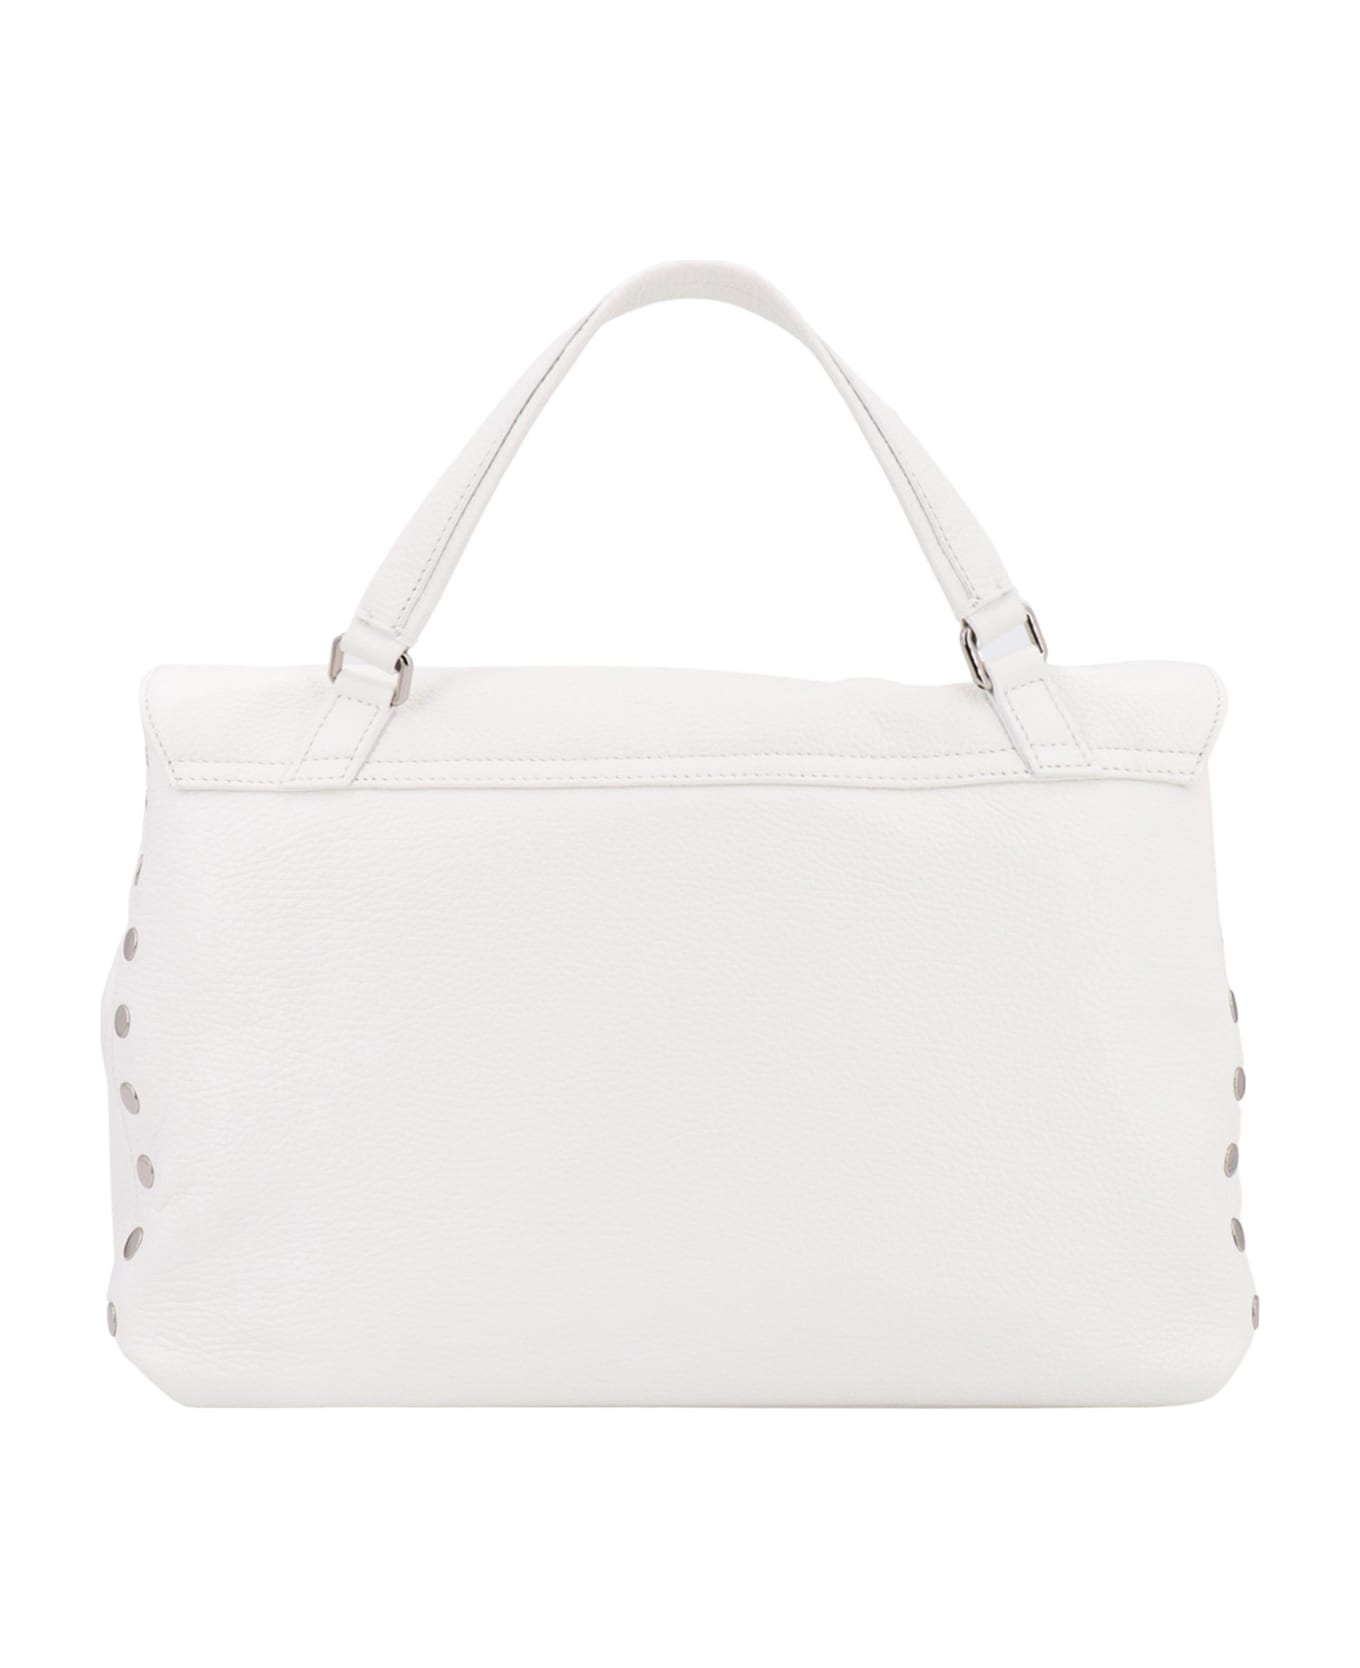 Zanellato Postina Daily M Handbag - White